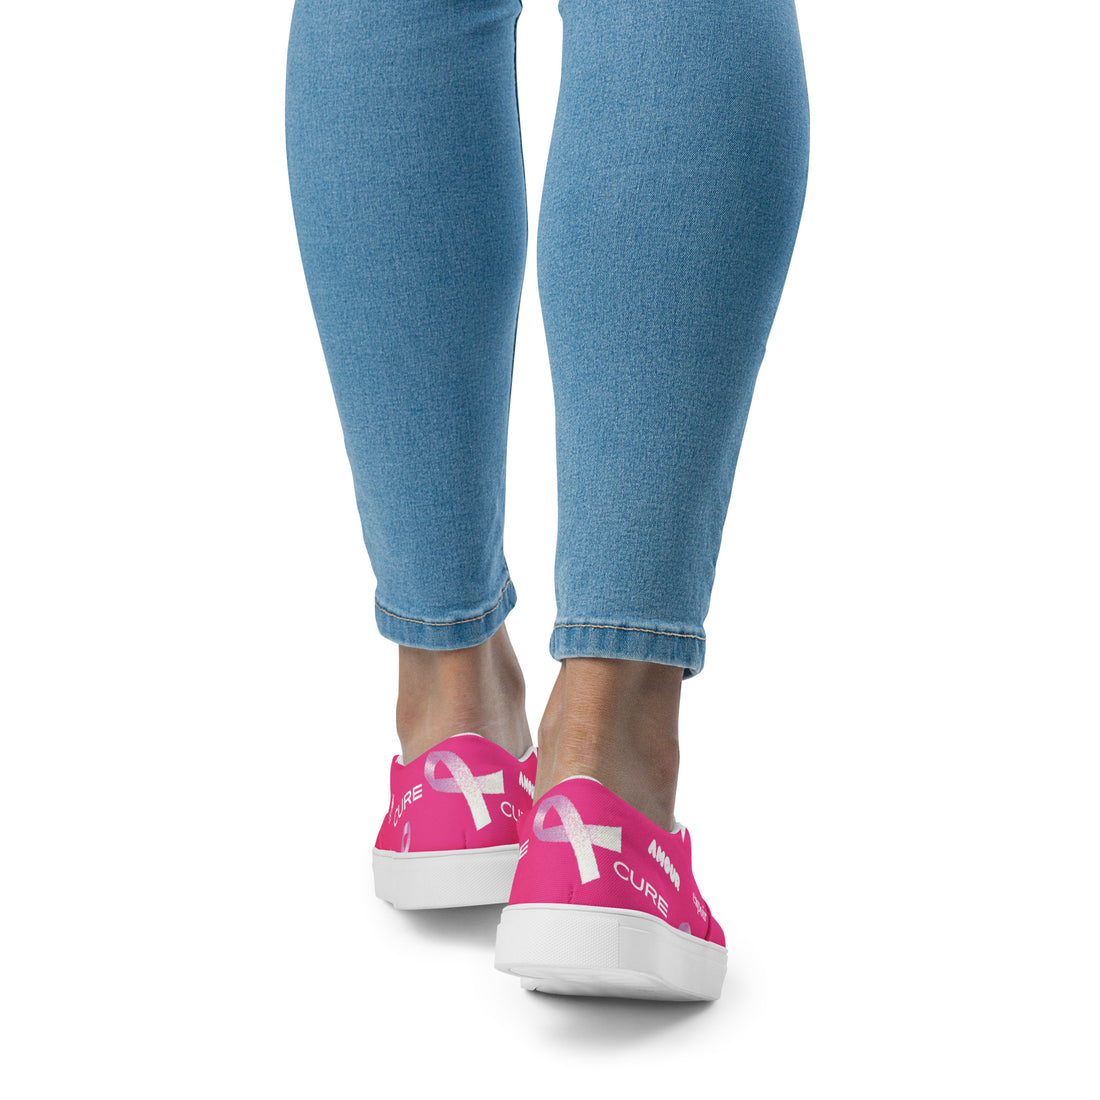 Women's laceless canvas tennis shoes (pink)